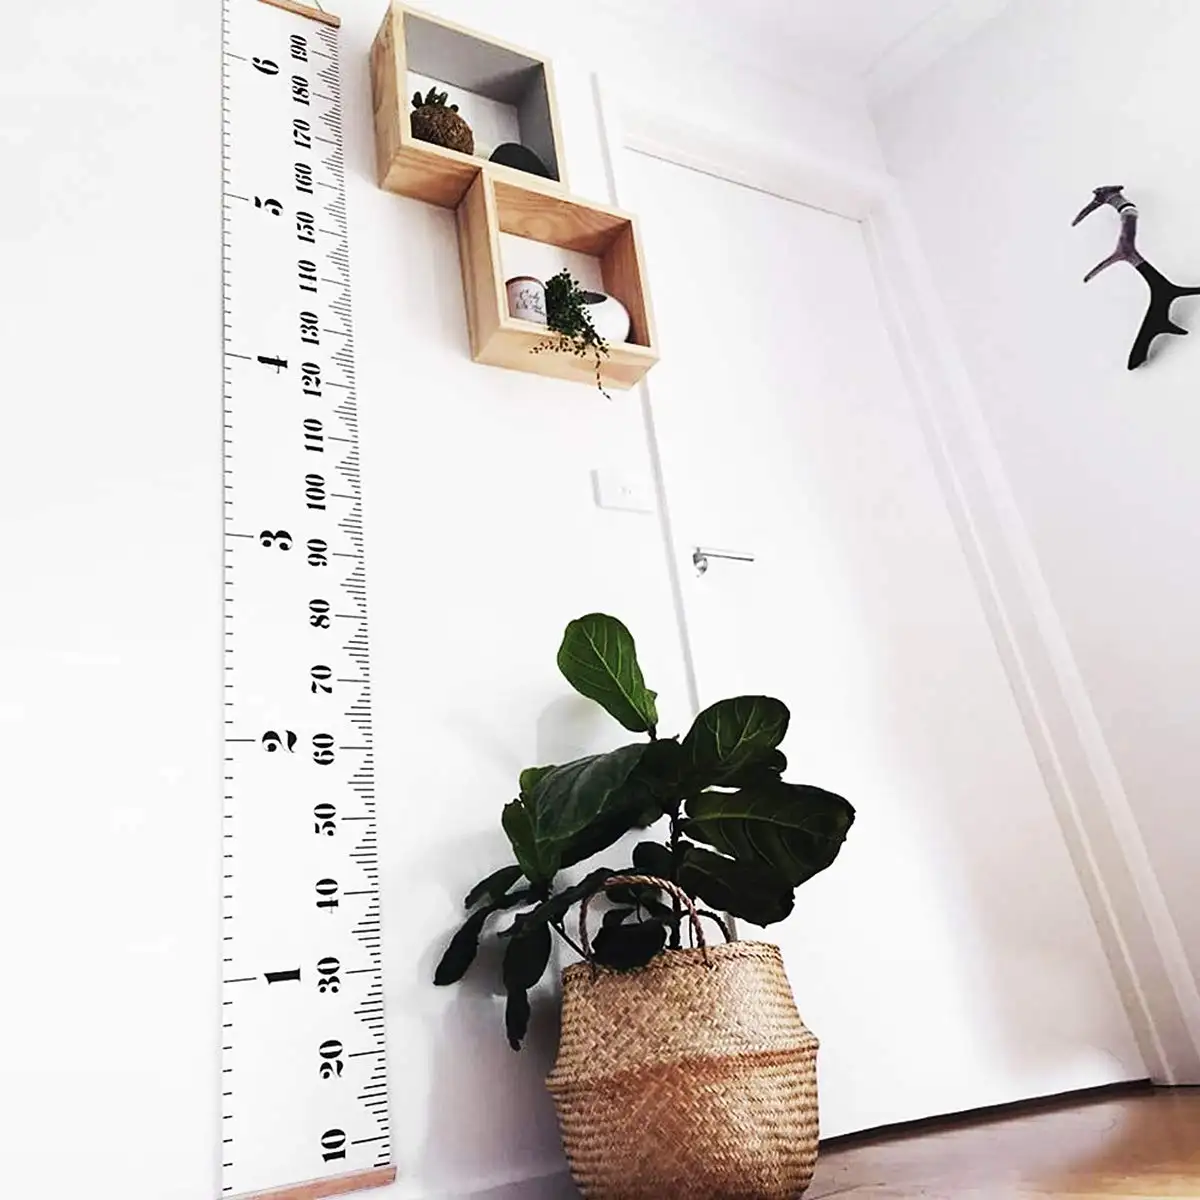 Tabla de crecimiento del bebé Tabla de medición de altura del niño Marco de madera Linda Tabla de medición colgante desmontable regla